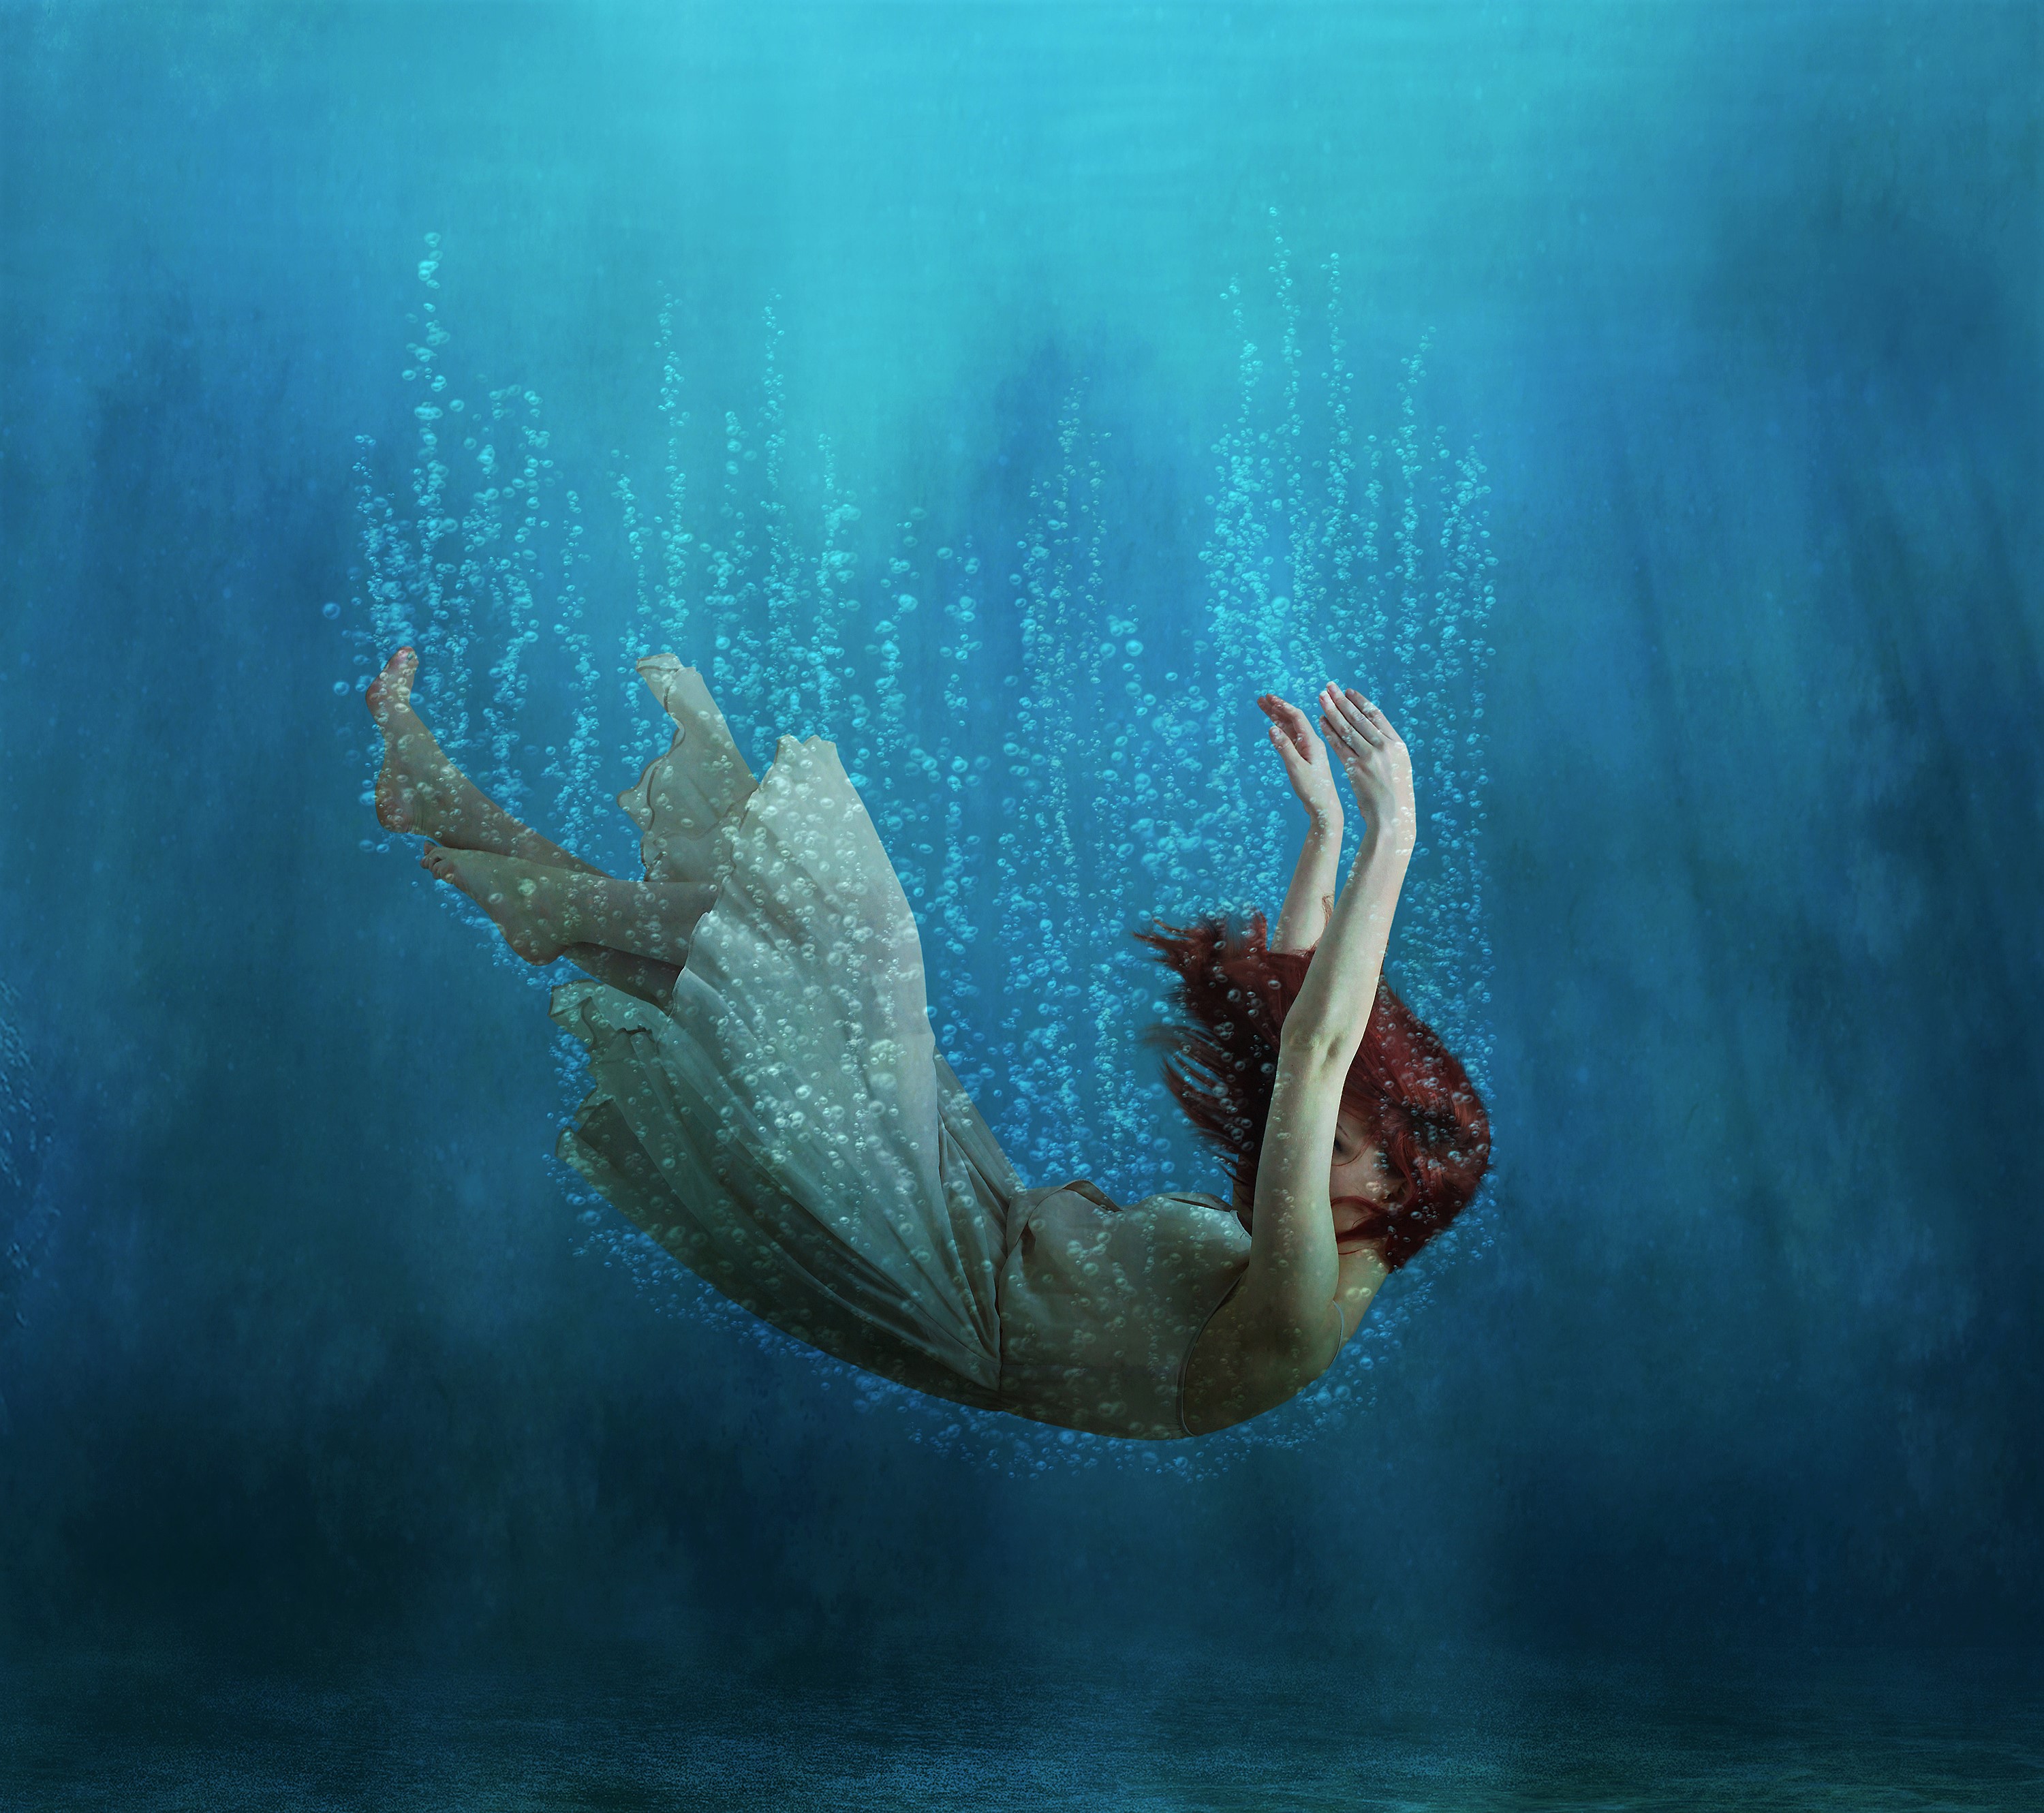 Falling Underwater , HD Wallpaper & Backgrounds